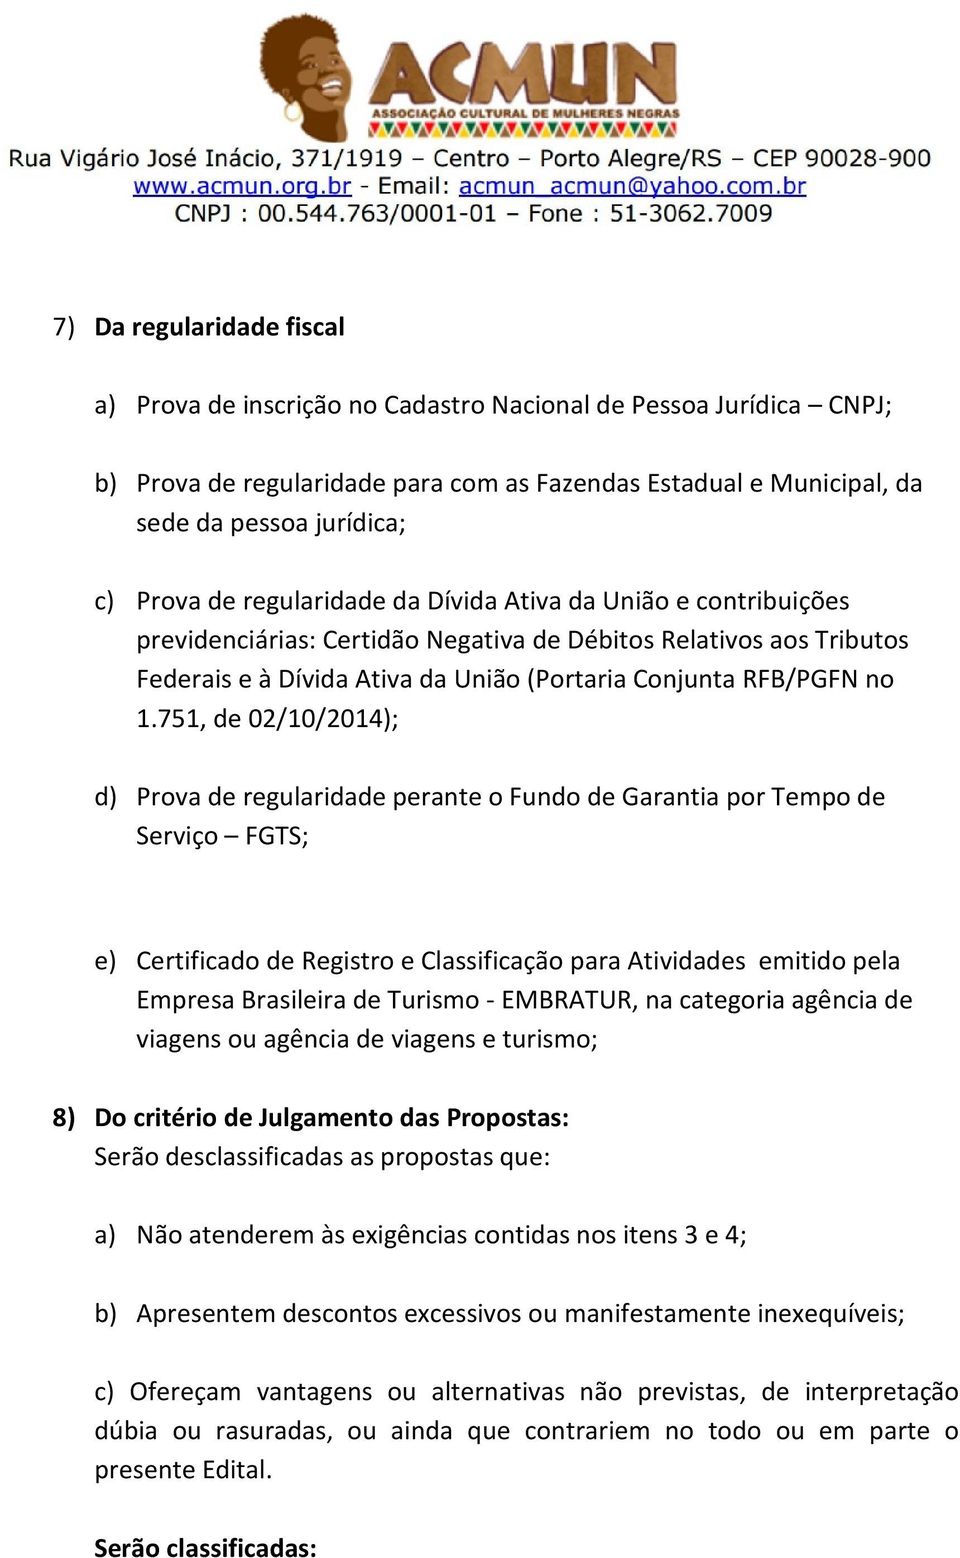 751, de 02/10/2014); d) Prova de regularidade perante o Fundo de Garantia por Tempo de Serviço FGTS; e) Certificado de Registro e Classificação para Atividades emitido pela Empresa Brasileira de